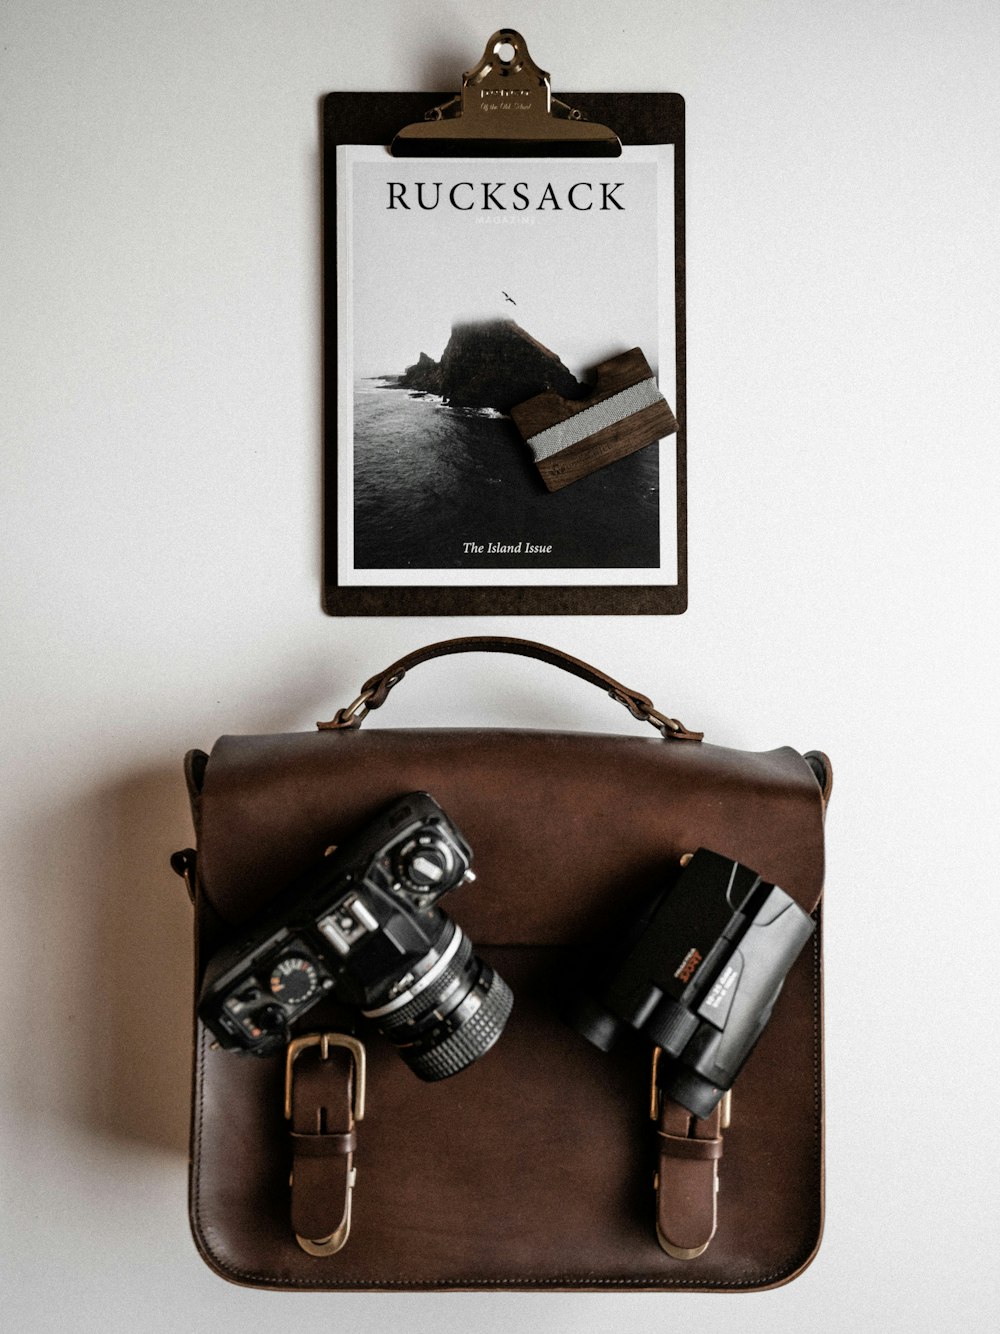 リュックサック、板紙、デジタル一眼レフカメラ、バッグ上部